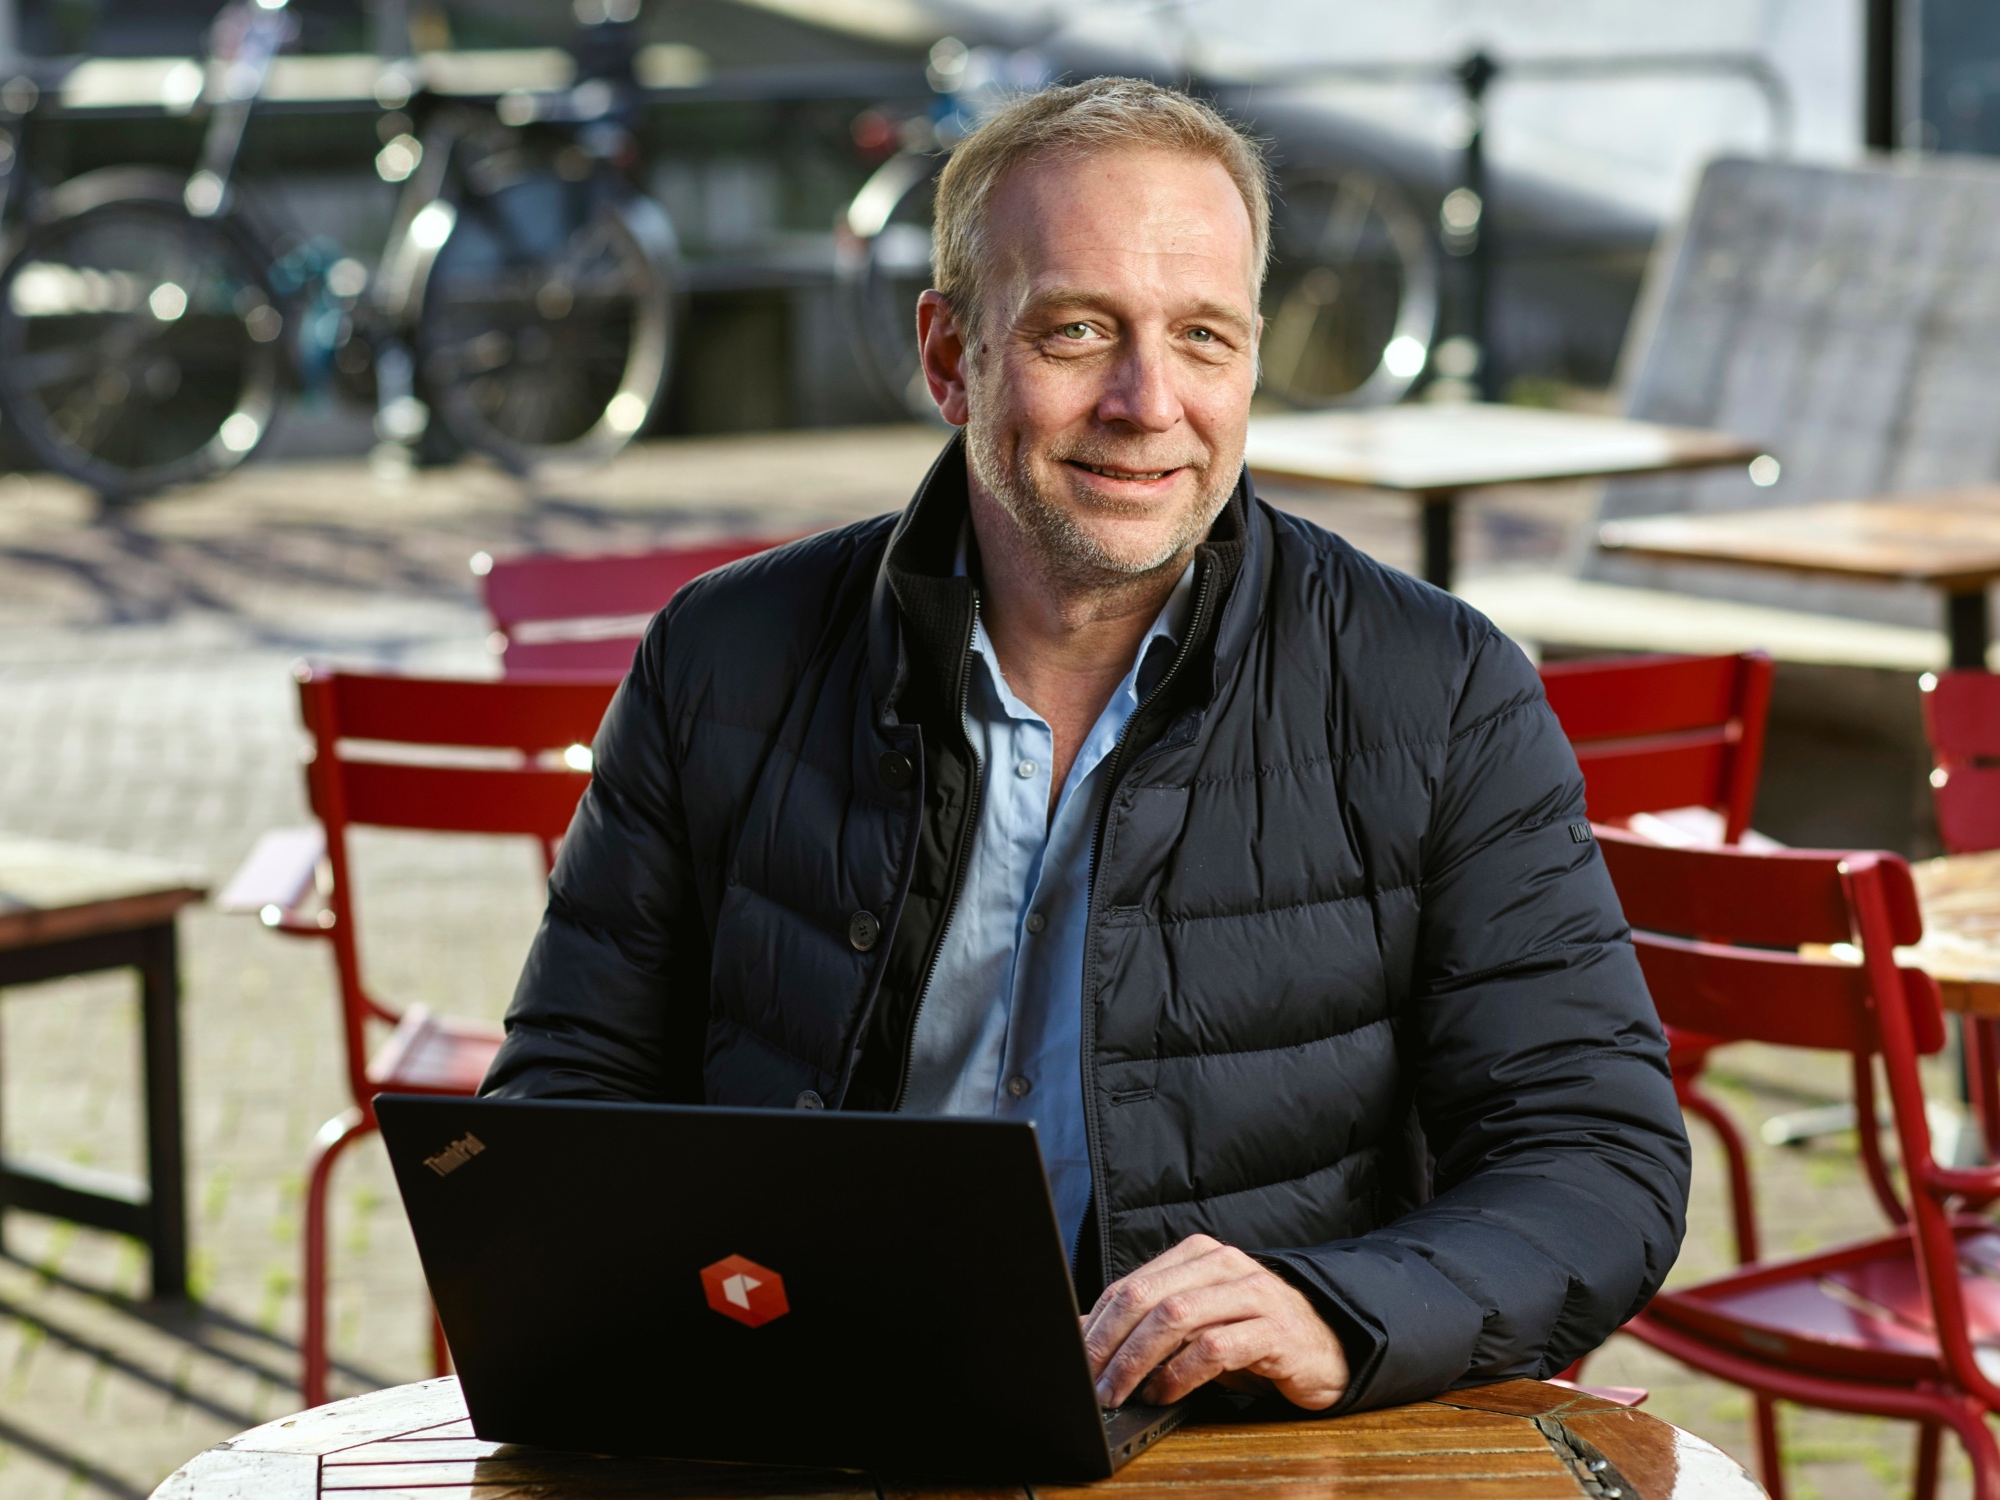 Foto: Jeroen ten Haave, CEO van Roamler. Bron: MarcelBakker.com